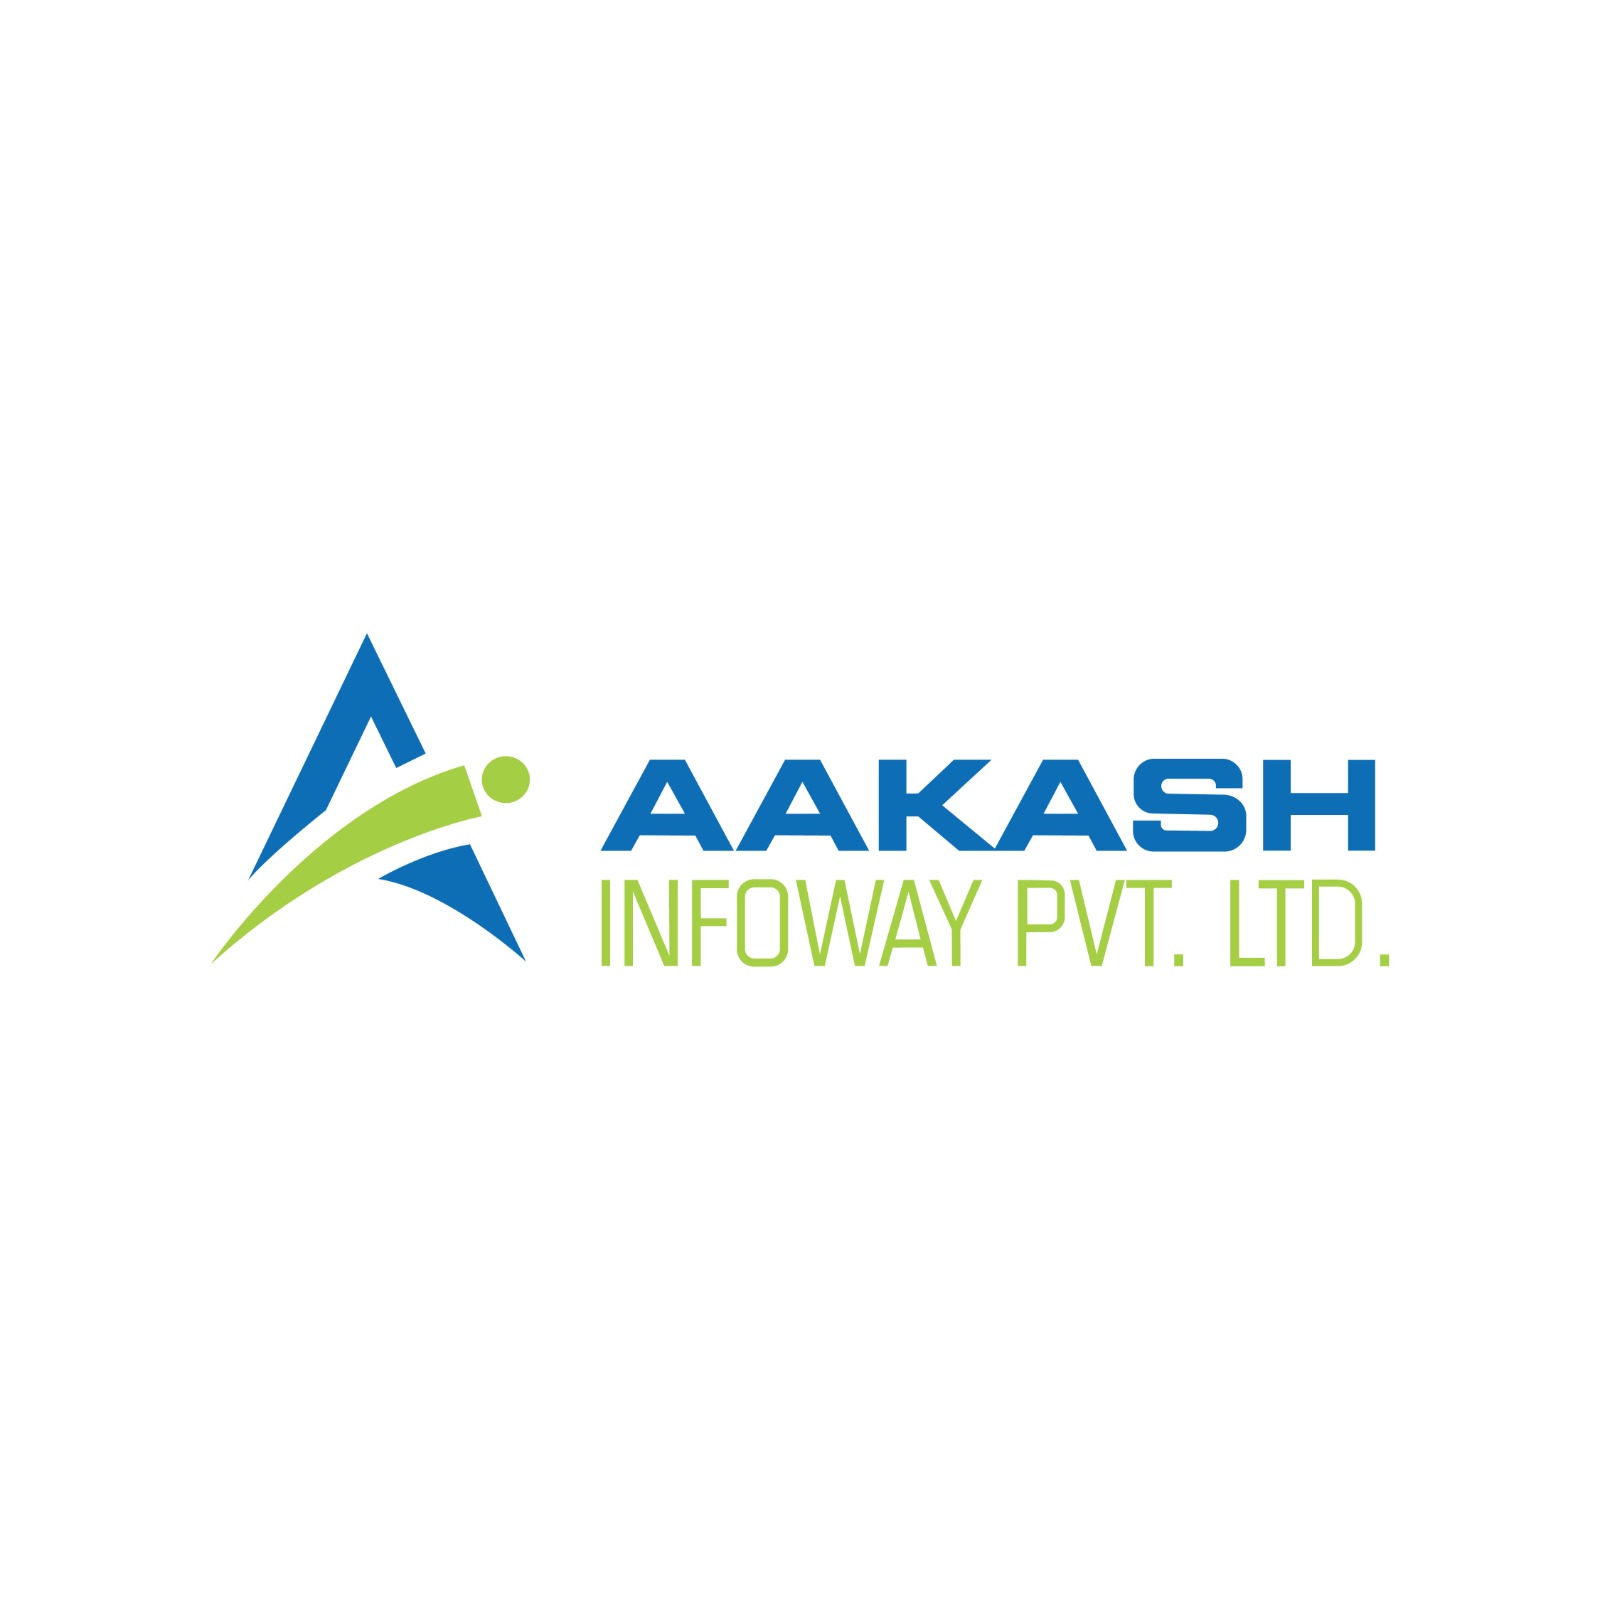 Aakash Infoway pvt ltd